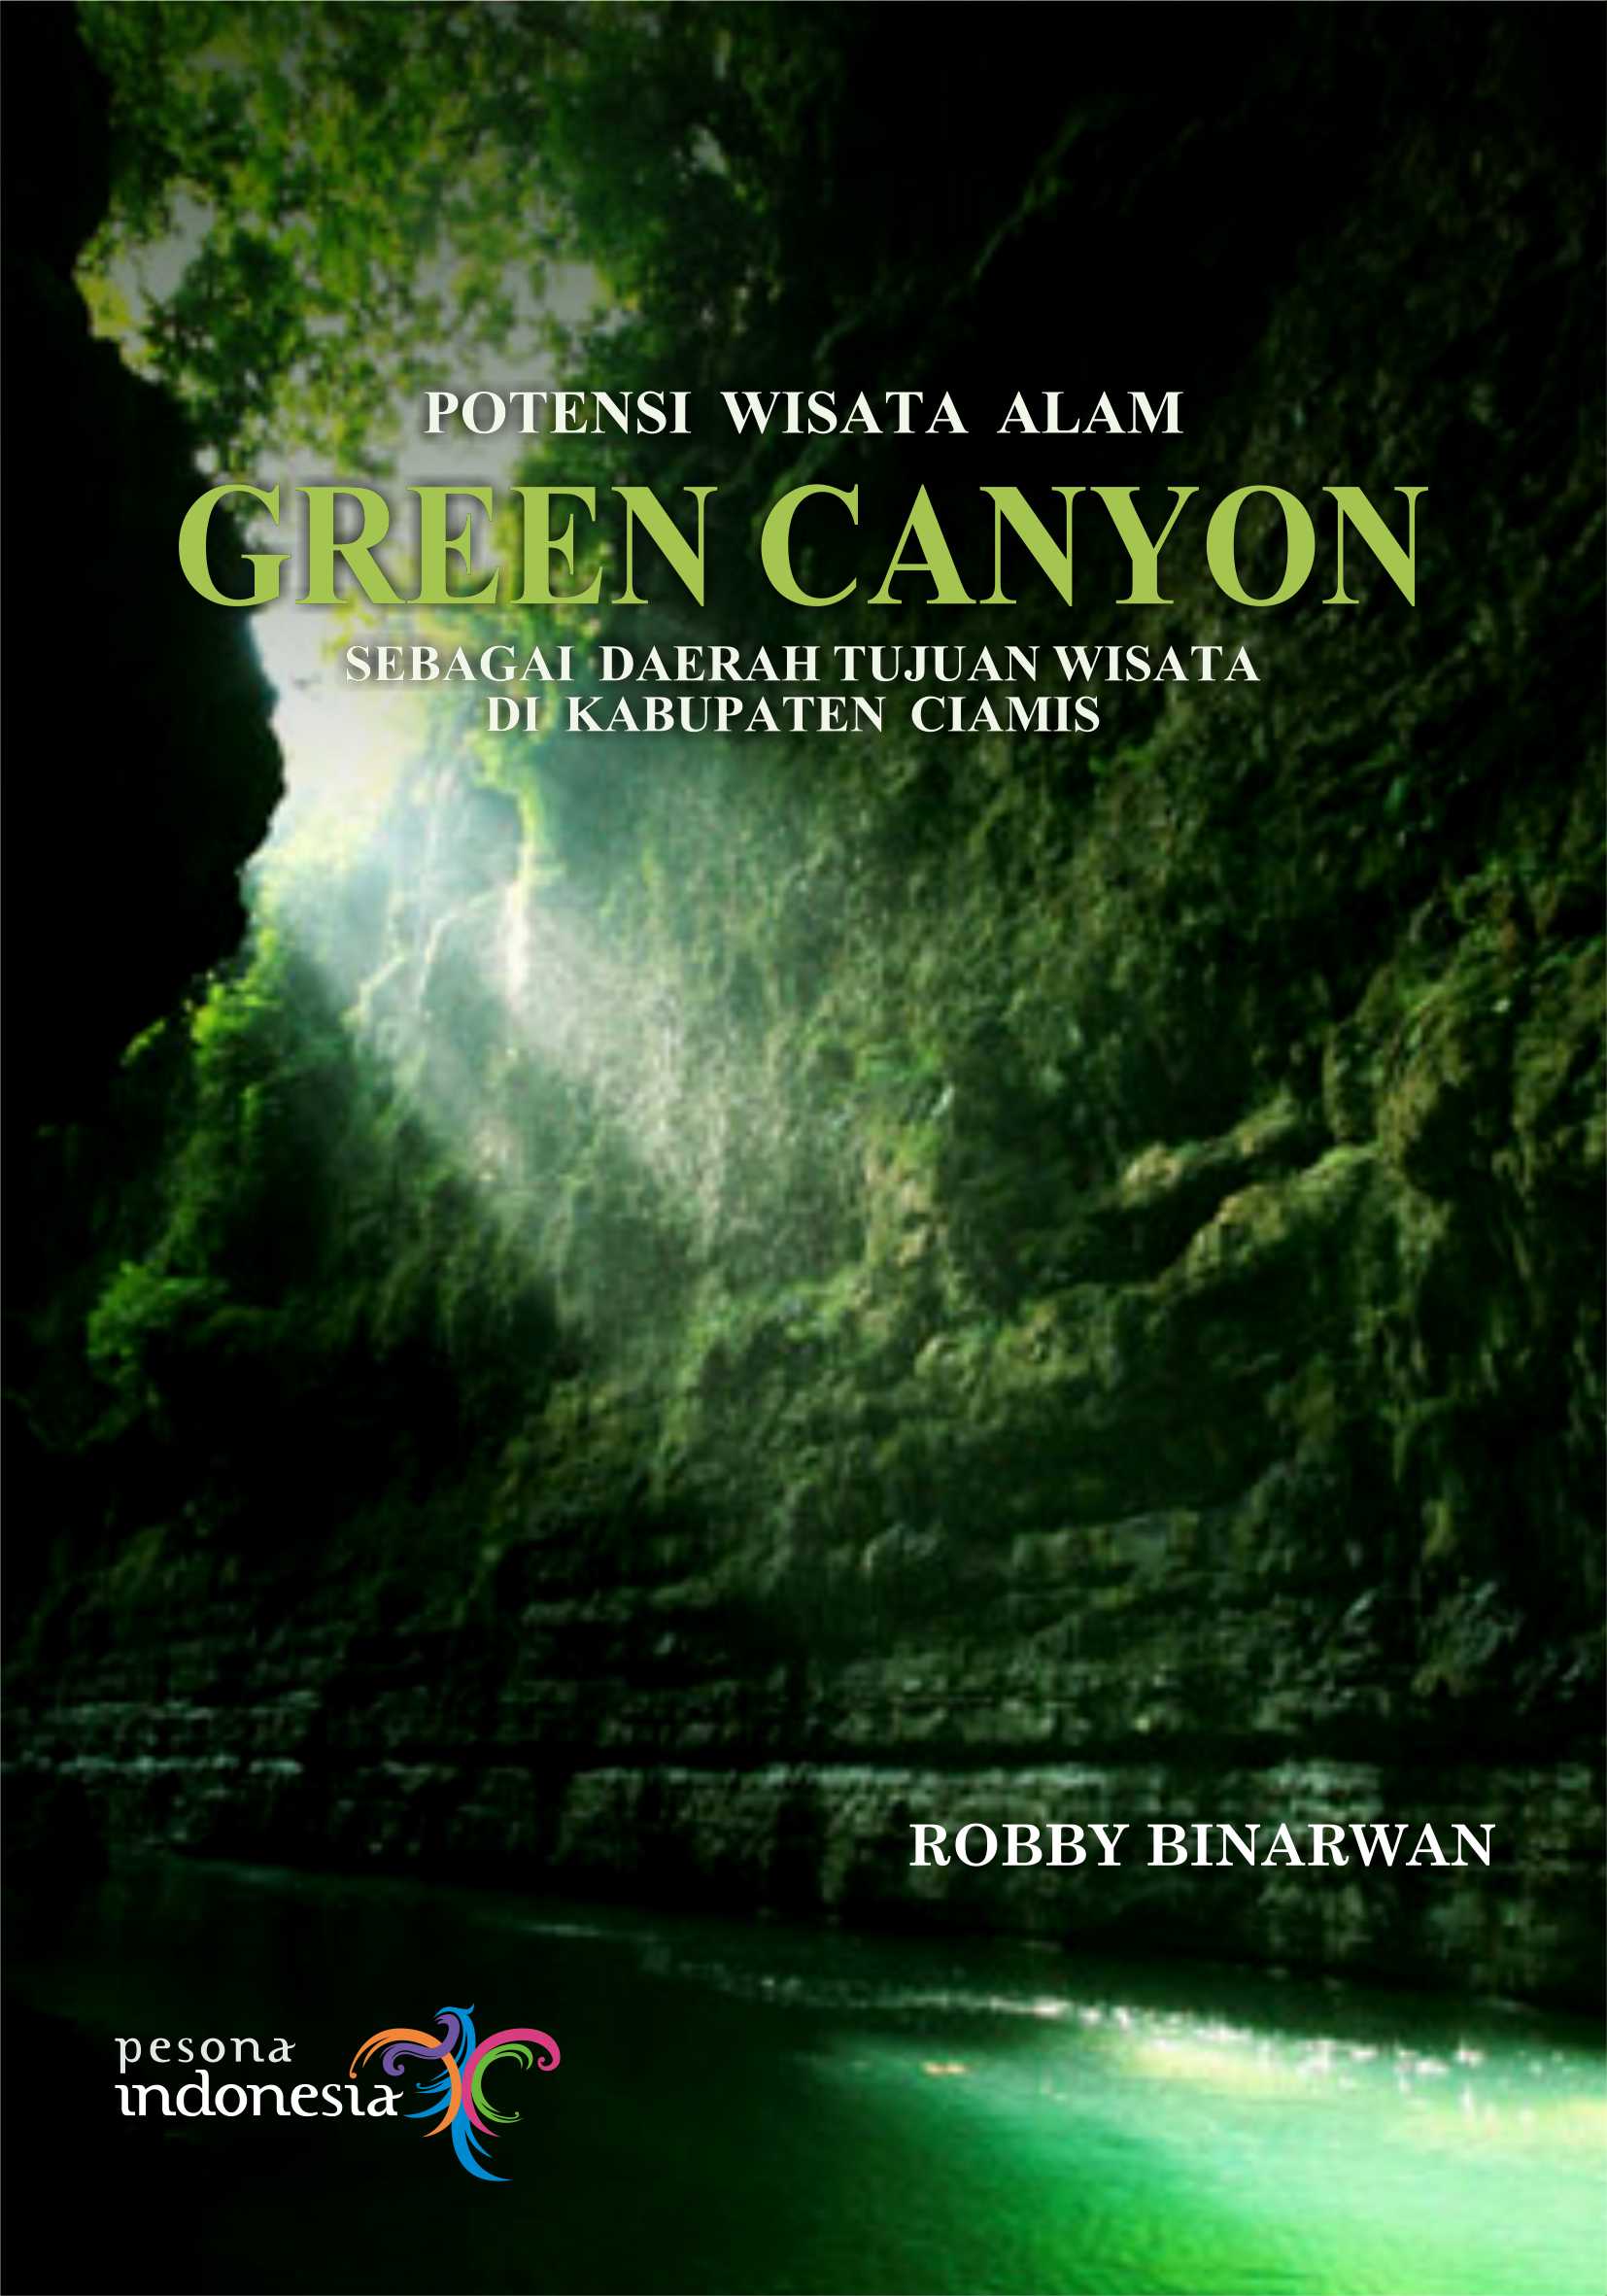 Buku Mengenal Wisata Alam Indonesia 2